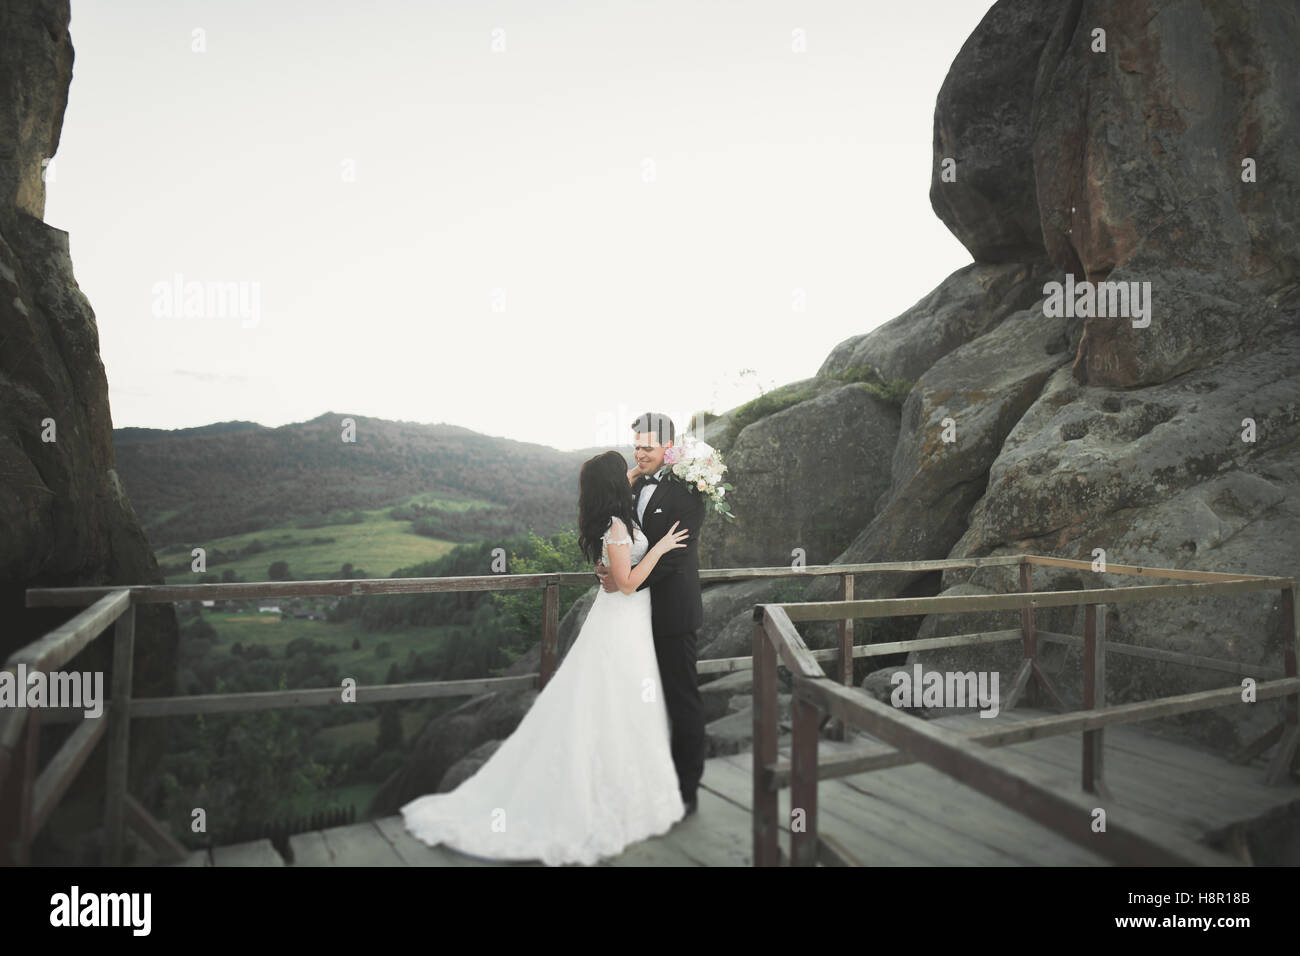 Happy wedding couple embrasser et s'étreindre près d'une haute falaise Banque D'Images